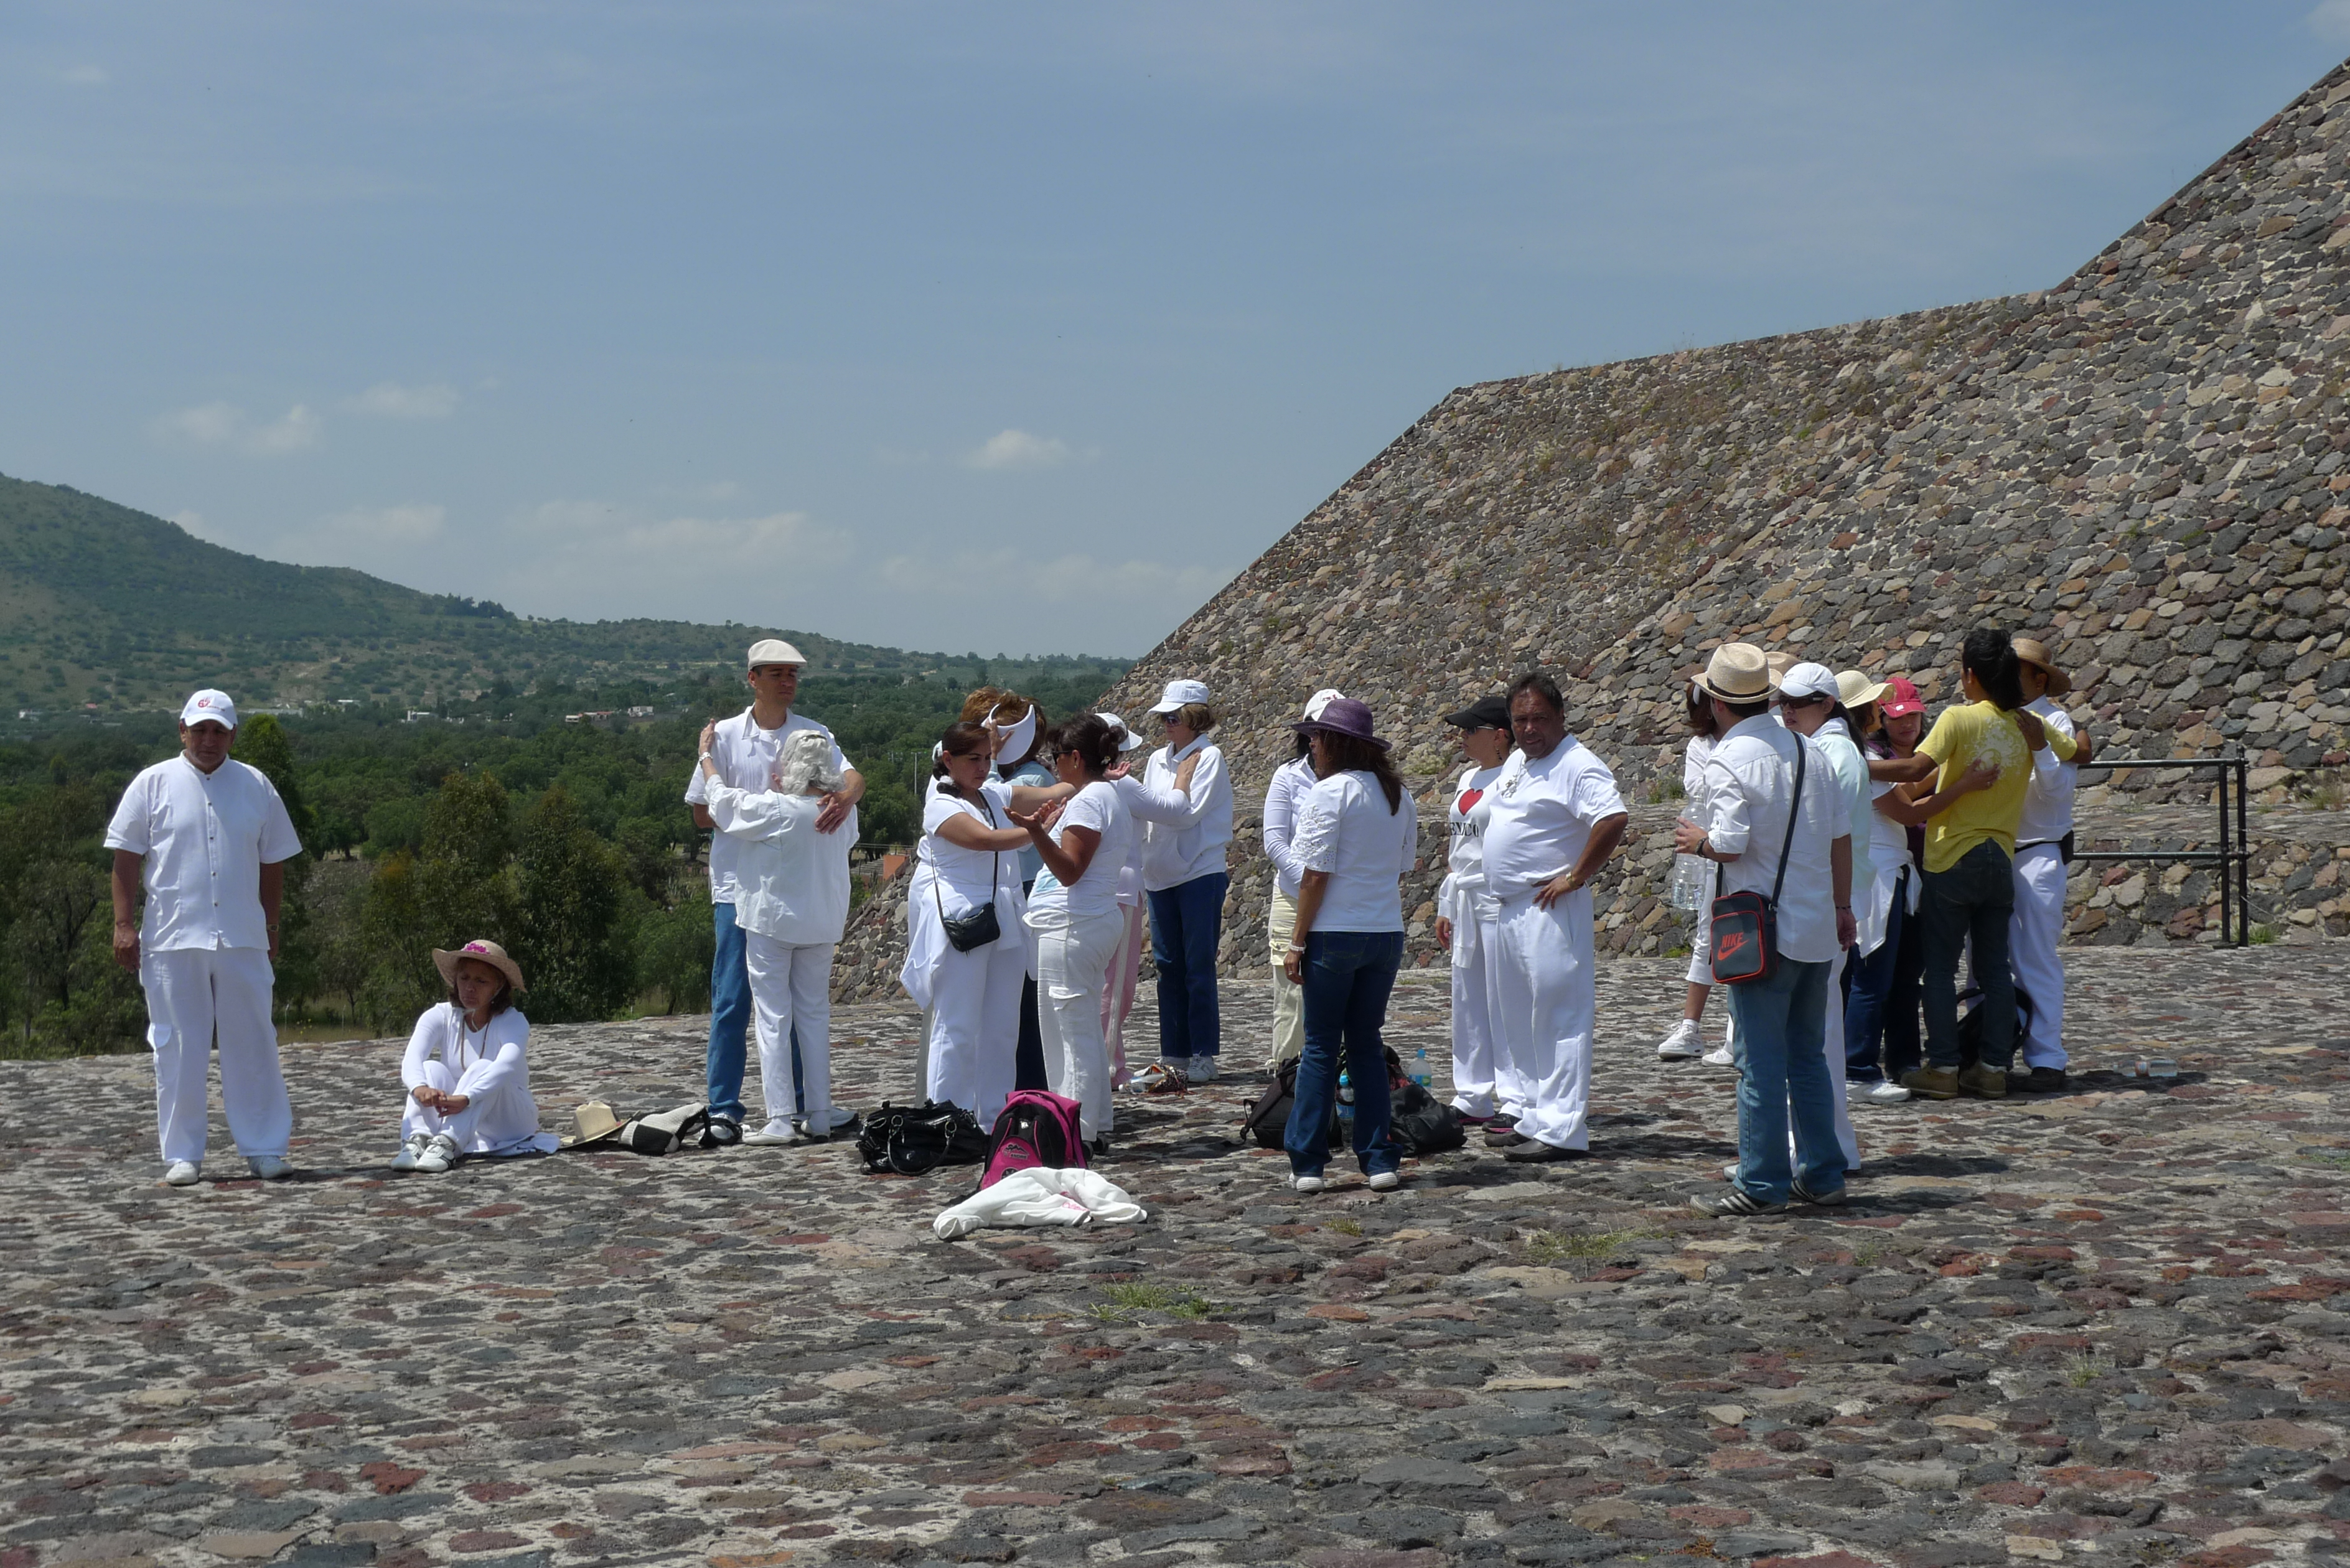 Celebración del equinoccio de otoño en Teotihiacan, México